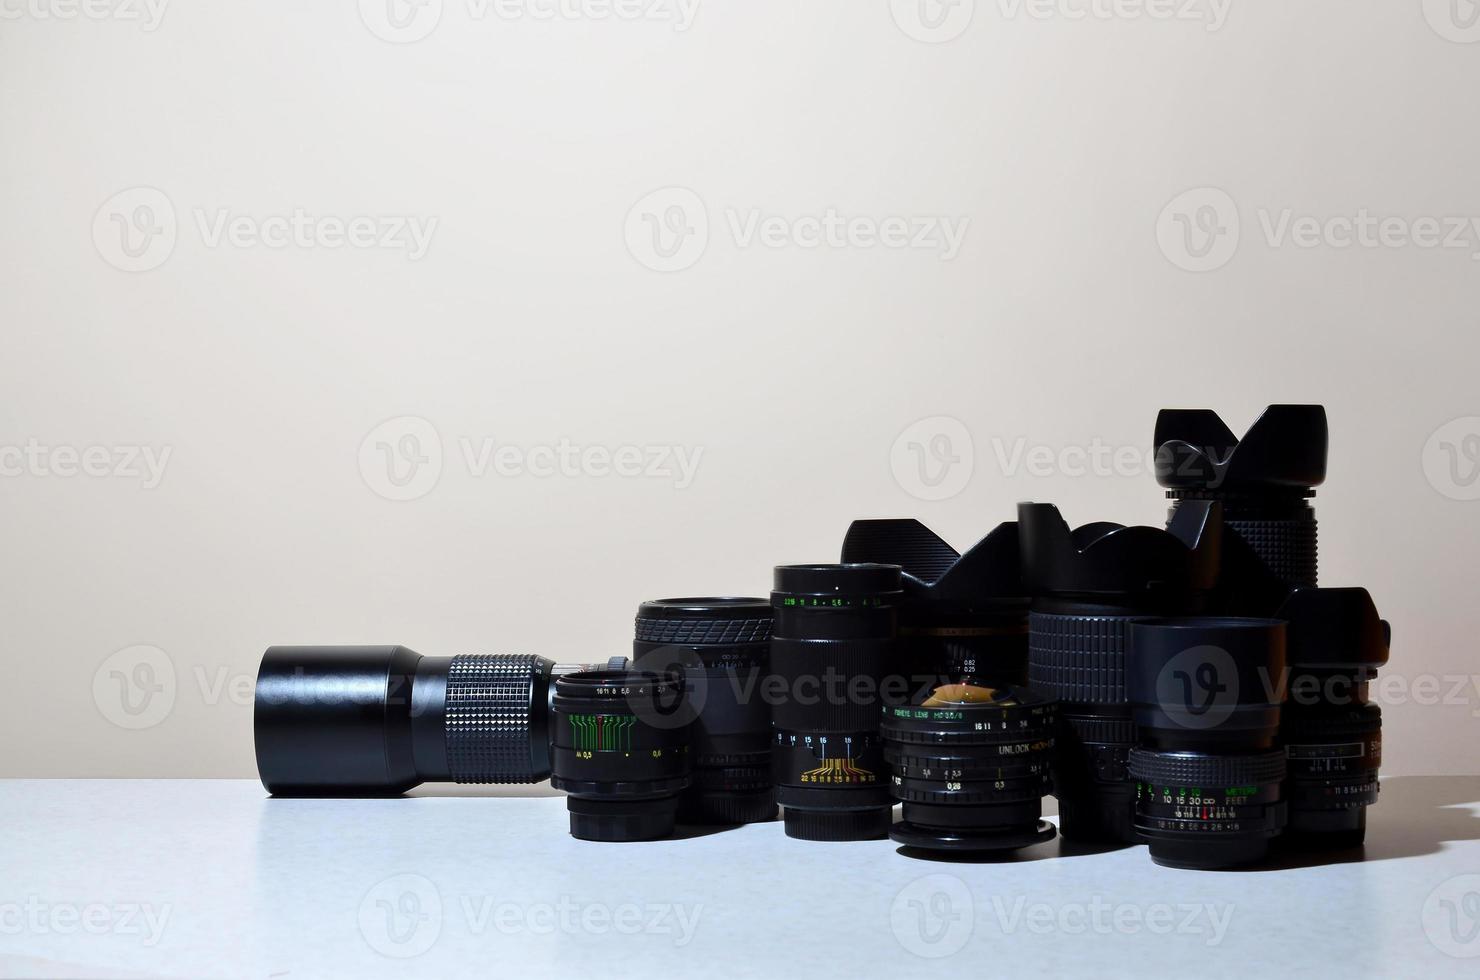 de nombreux objectifs professionnels différents pour appareil photo reflex se trouvent sur un bureau incolore